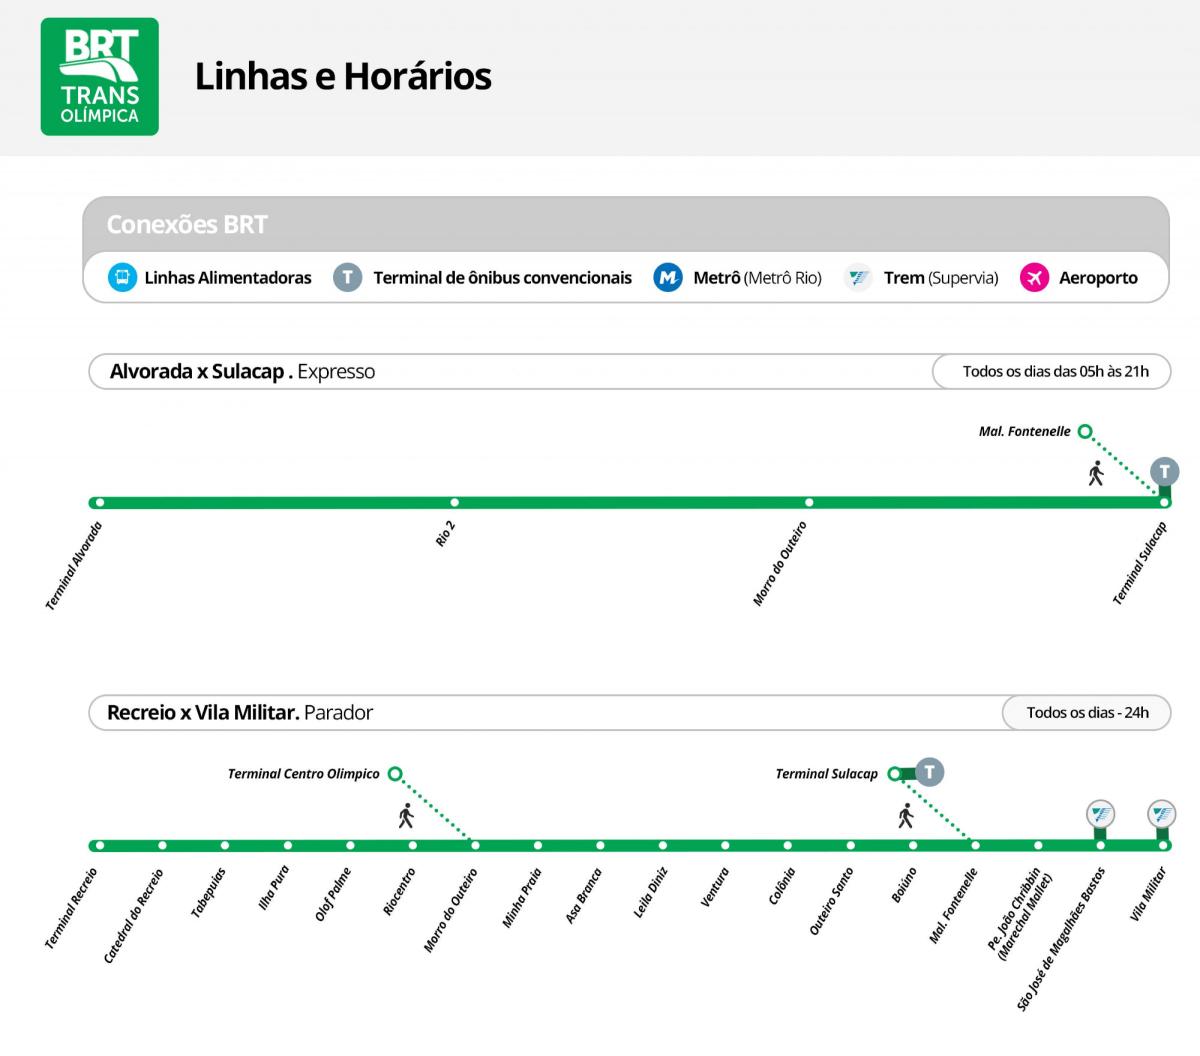 Χάρτης του BRT TransOlimpica - Σταθμούς